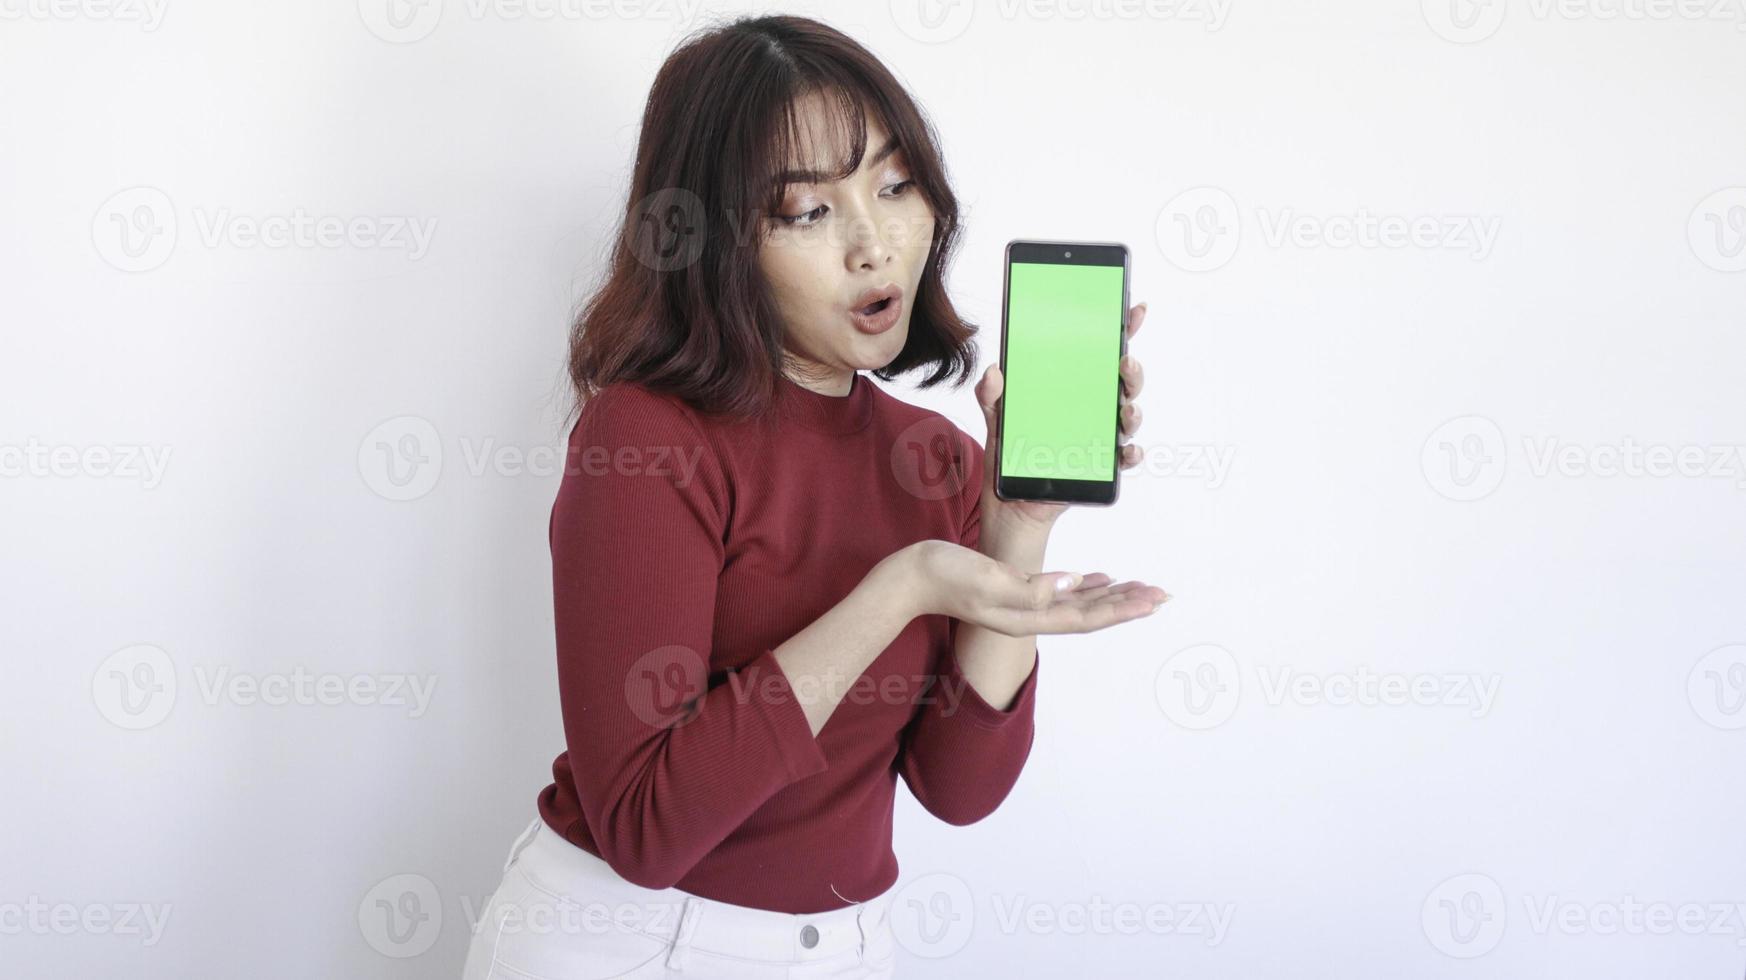 schok Aziatische mooi meisje punt op groen scherm telefoon op witte achtergrond foto